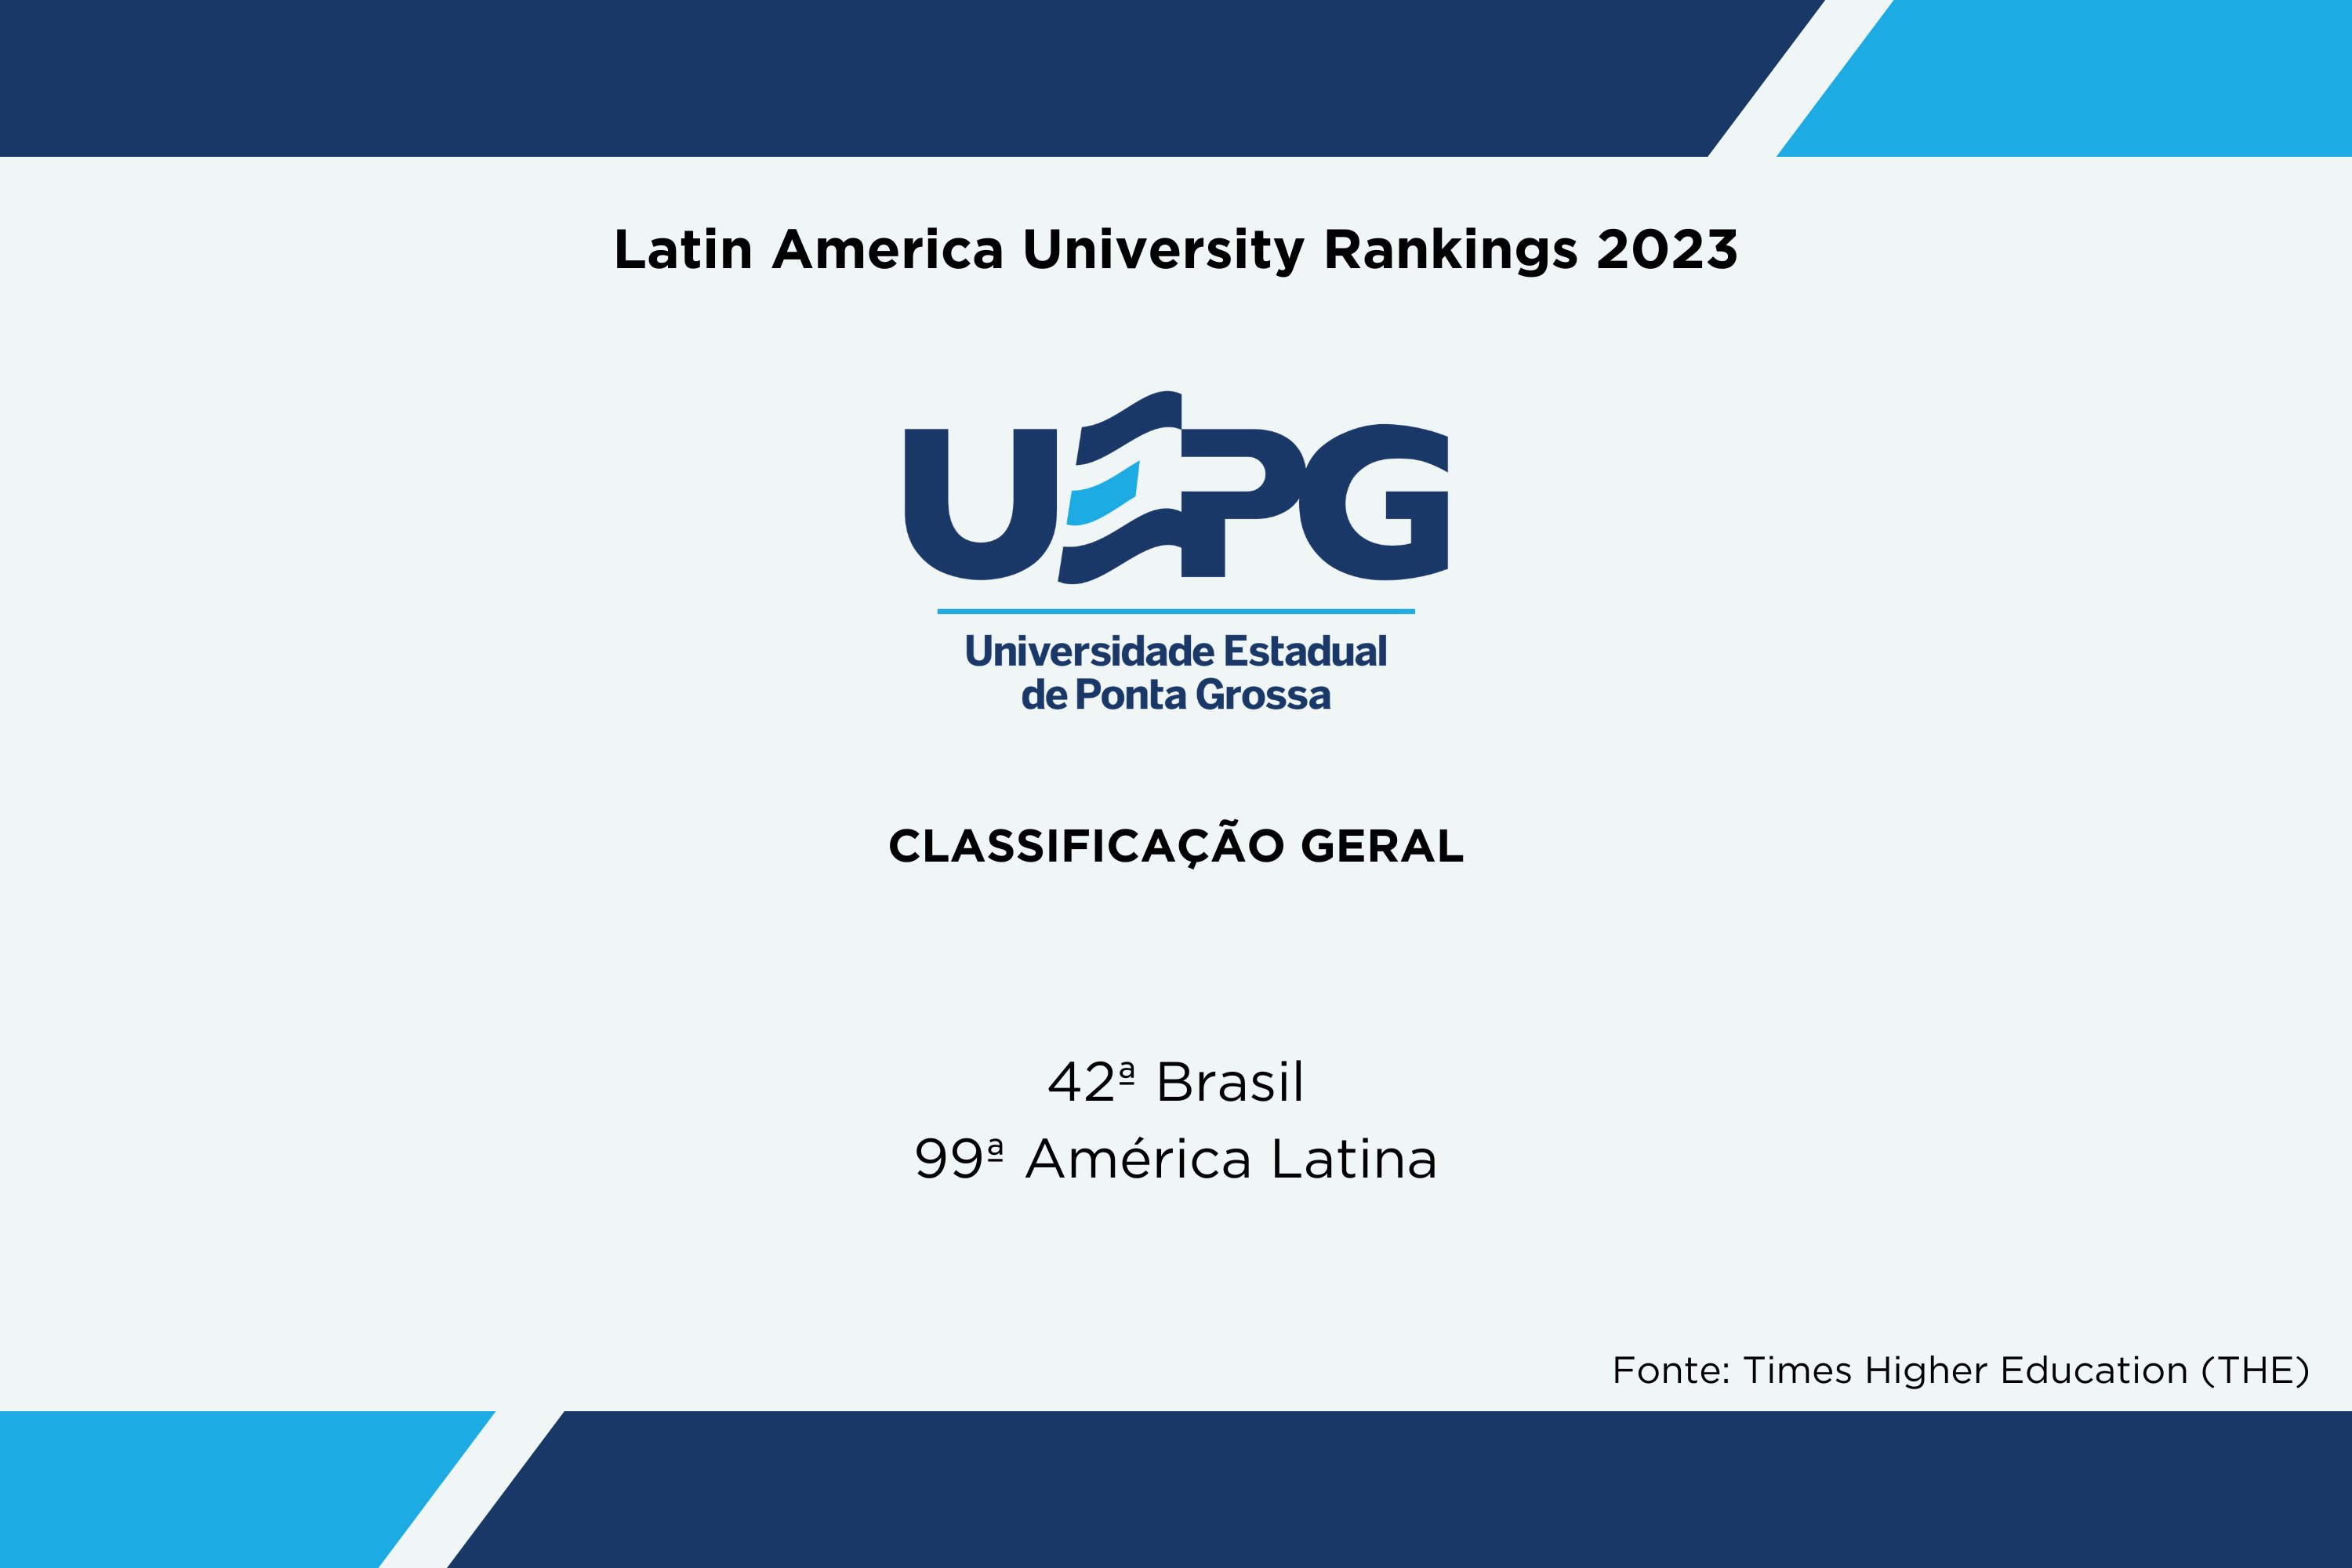 Universidades estaduais estão entre as melhores da América Latina e Caribe, aponta ranking